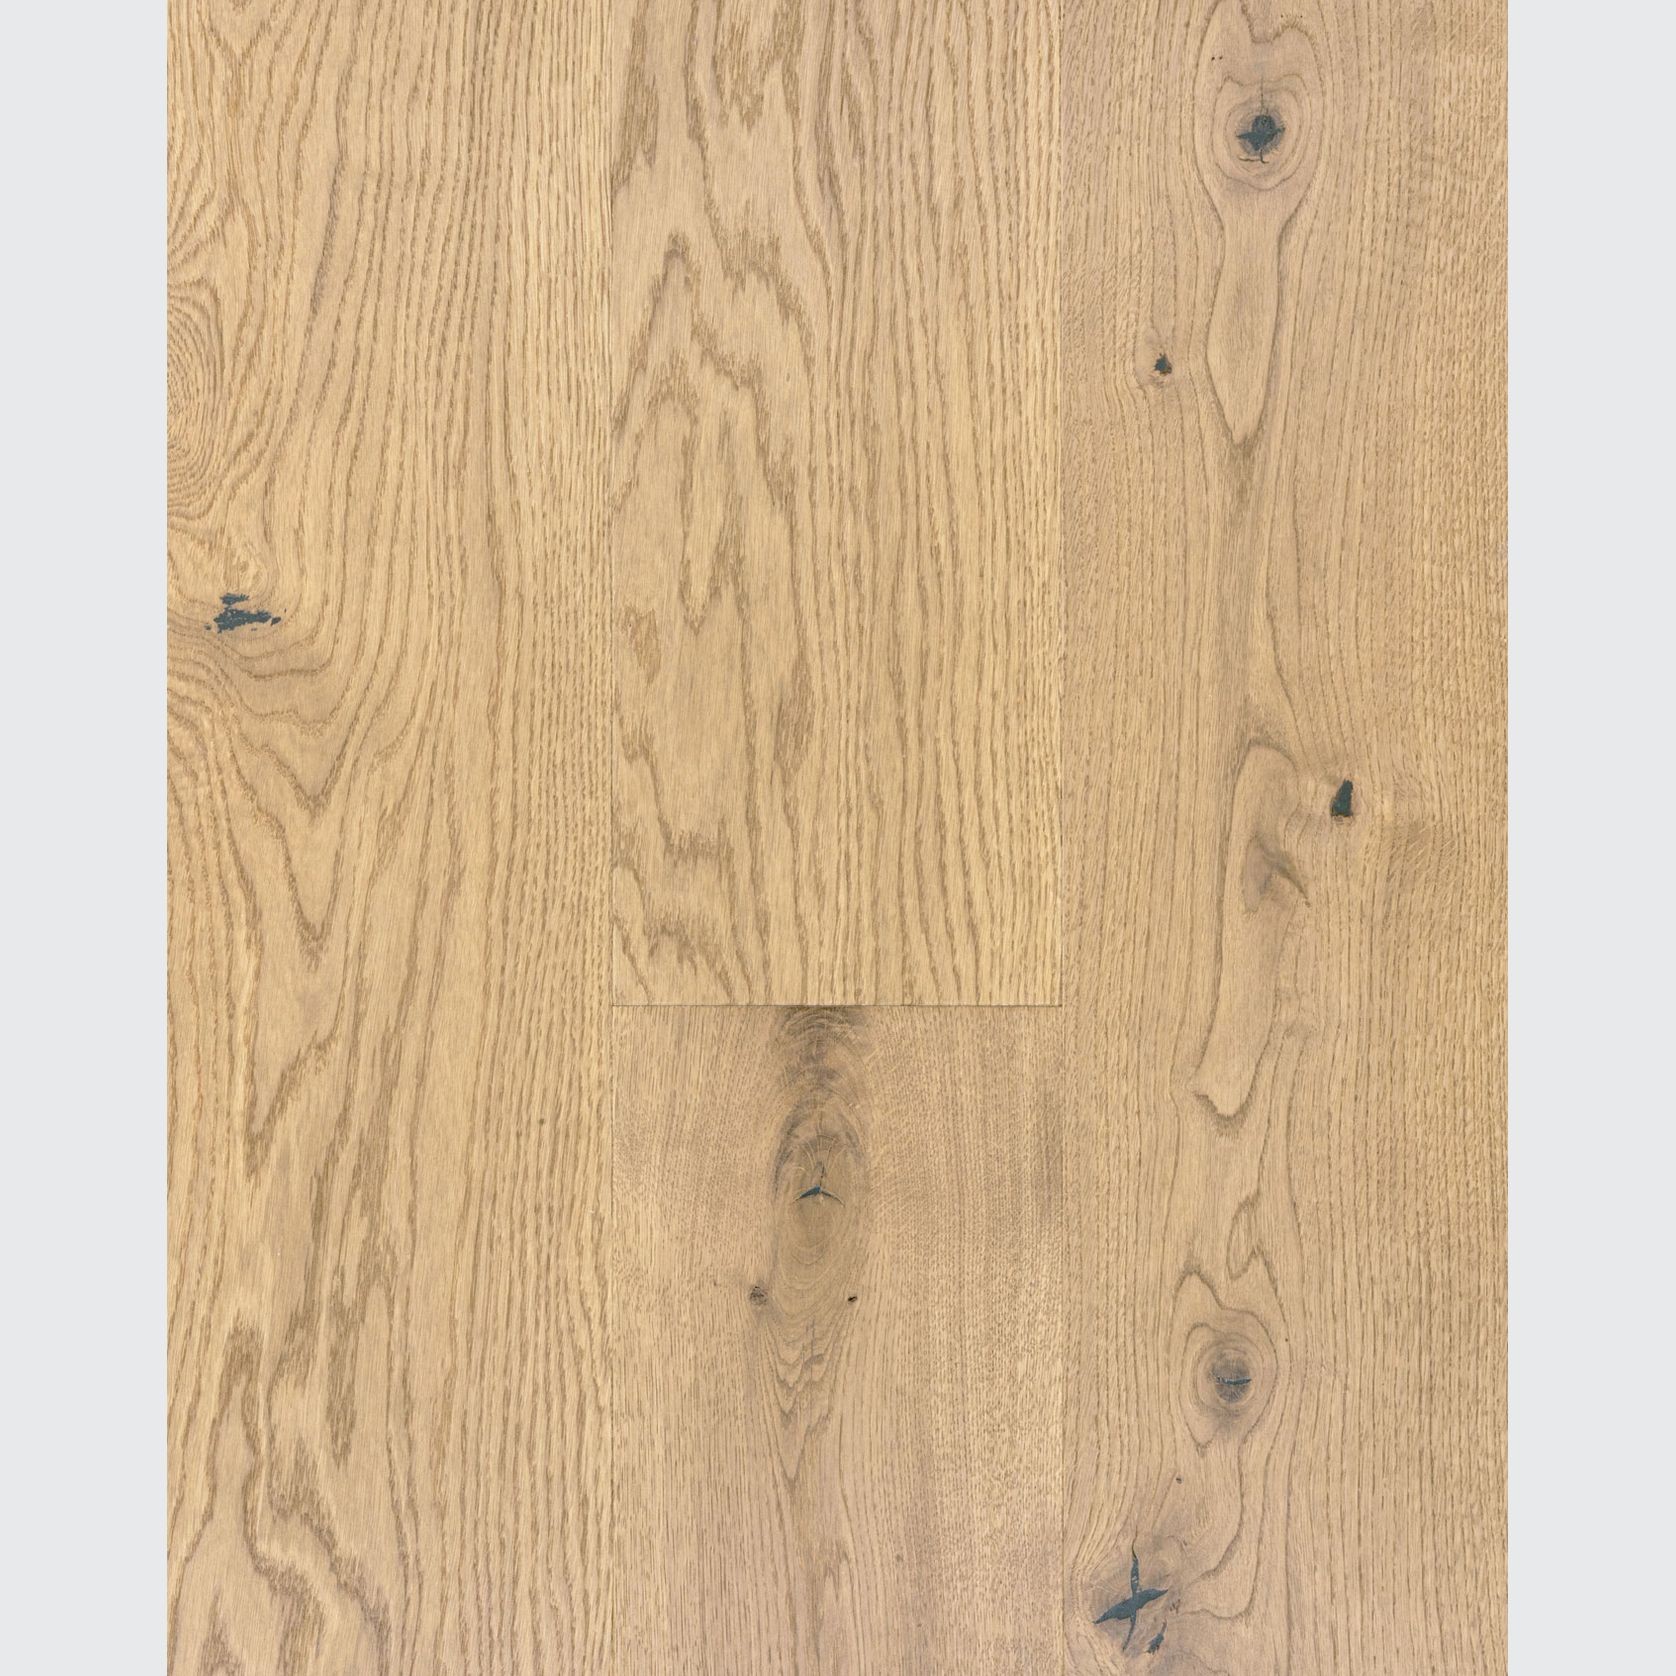 Urban Milan Wood Flooring gallery detail image